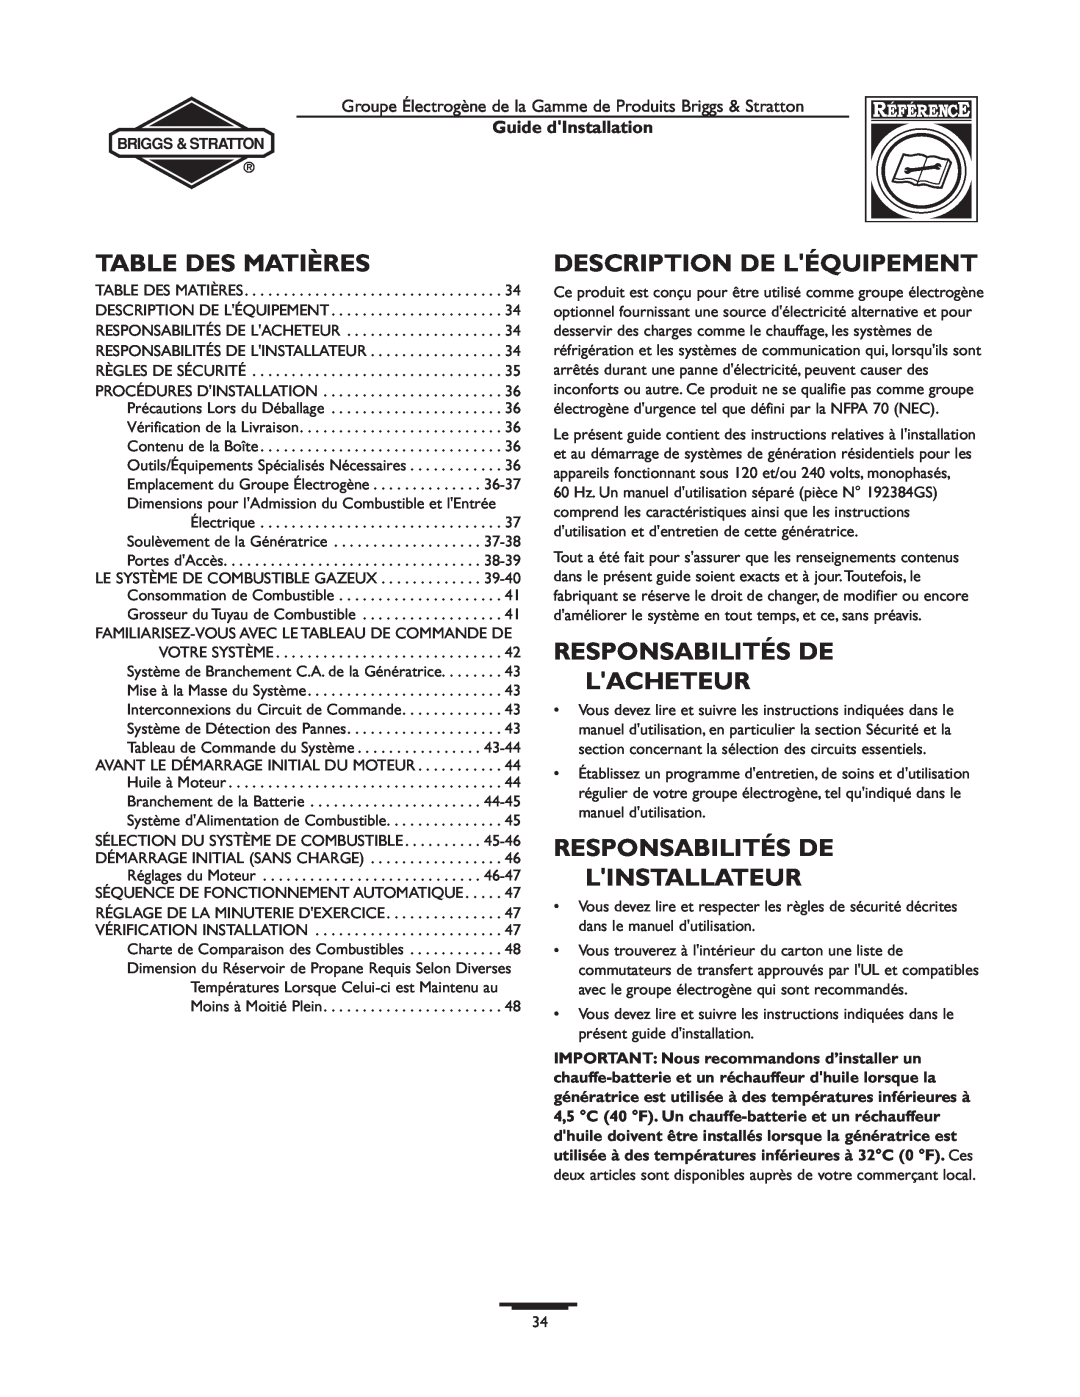 Briggs & Stratton 01938-0, 01815-0 manual Table Des Matières, Description De Léquipement, Responsabilités De Lacheteur 